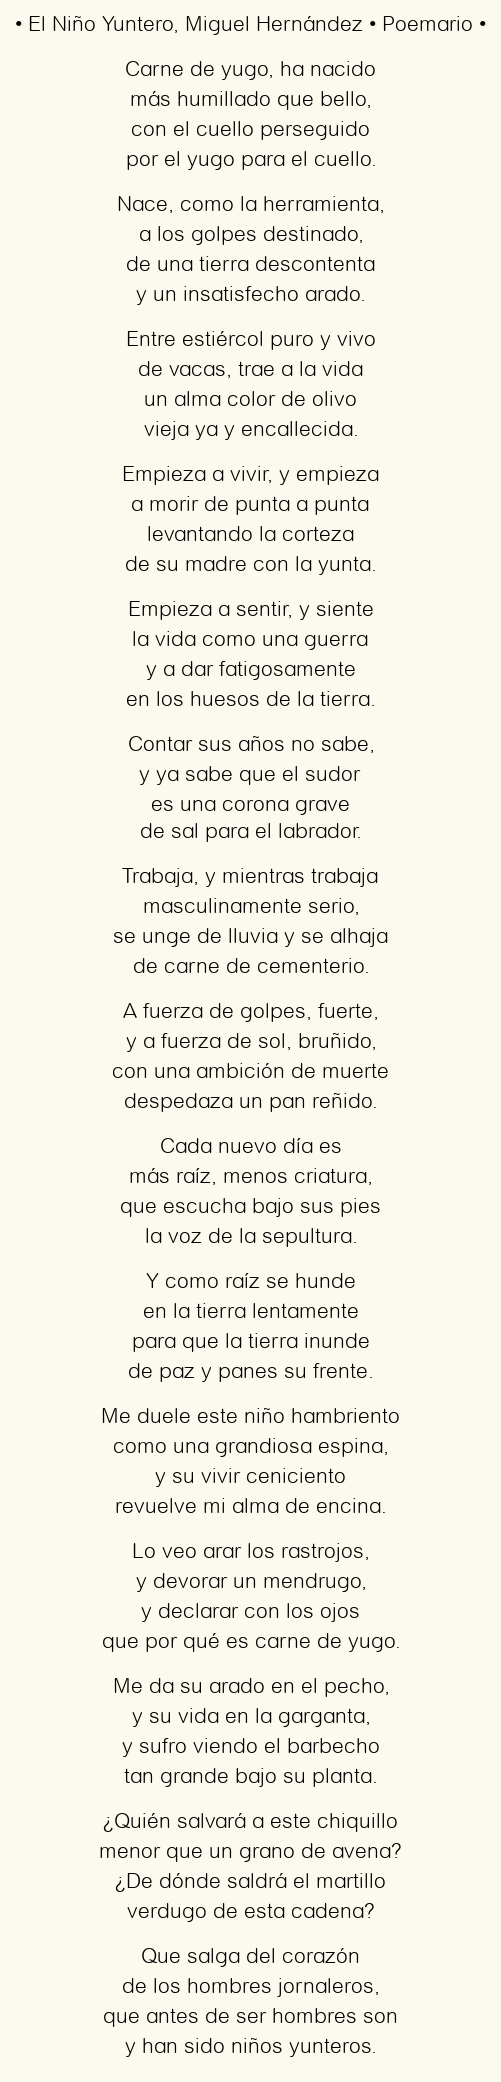 Imagen con el poema El Niño Yuntero, por Miguel Hernández